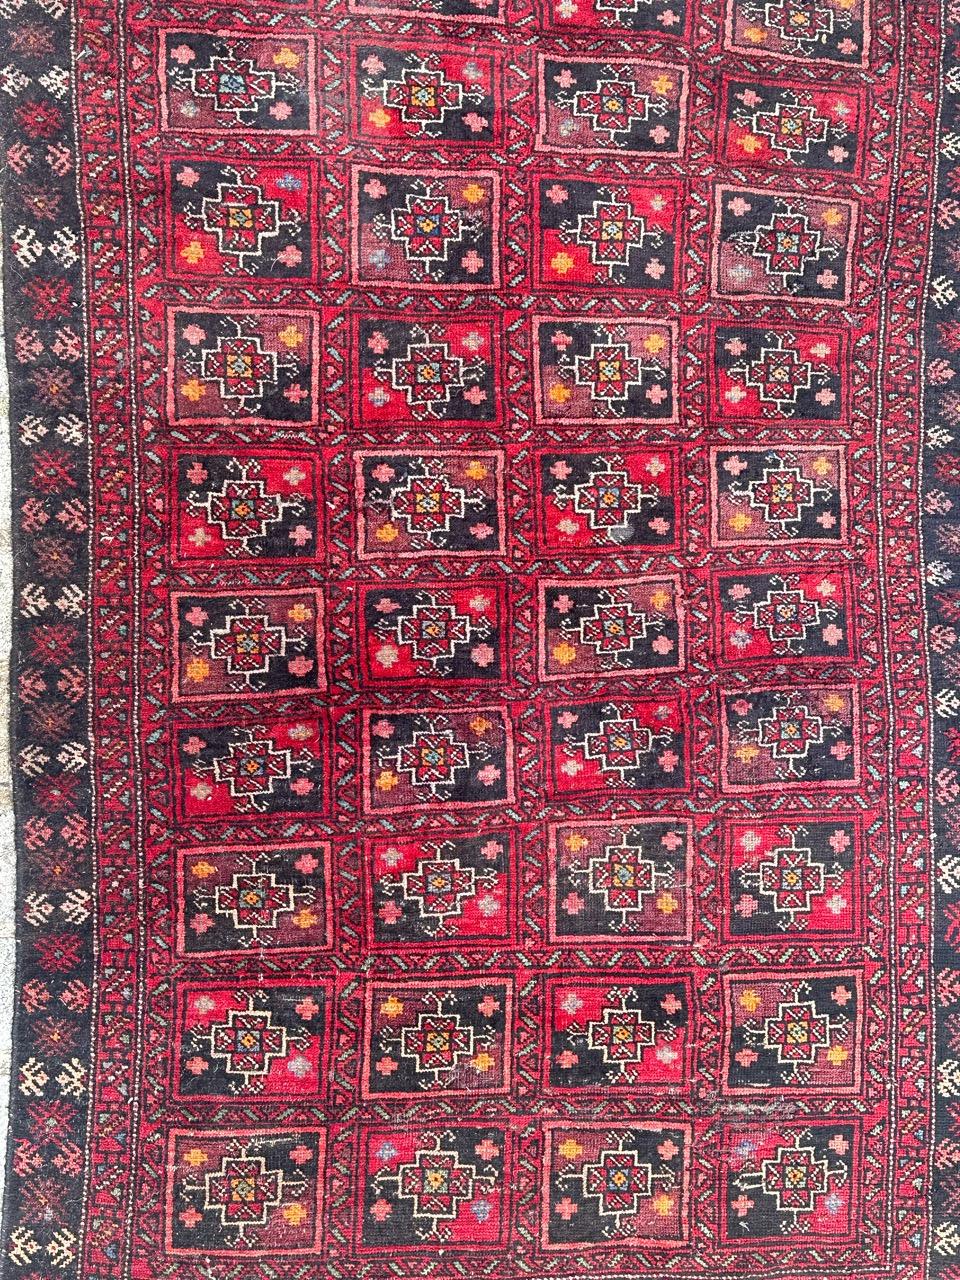 Joli tapis turkmène Baluch du milieu du siècle avec de beaux motifs tribaux et géométriques et de belles couleurs avec du rouge, du violet, de l'orange, du jaune, du rose, du bleu ciel, du bleu foncé et du blanc, entièrement noué à la main avec de